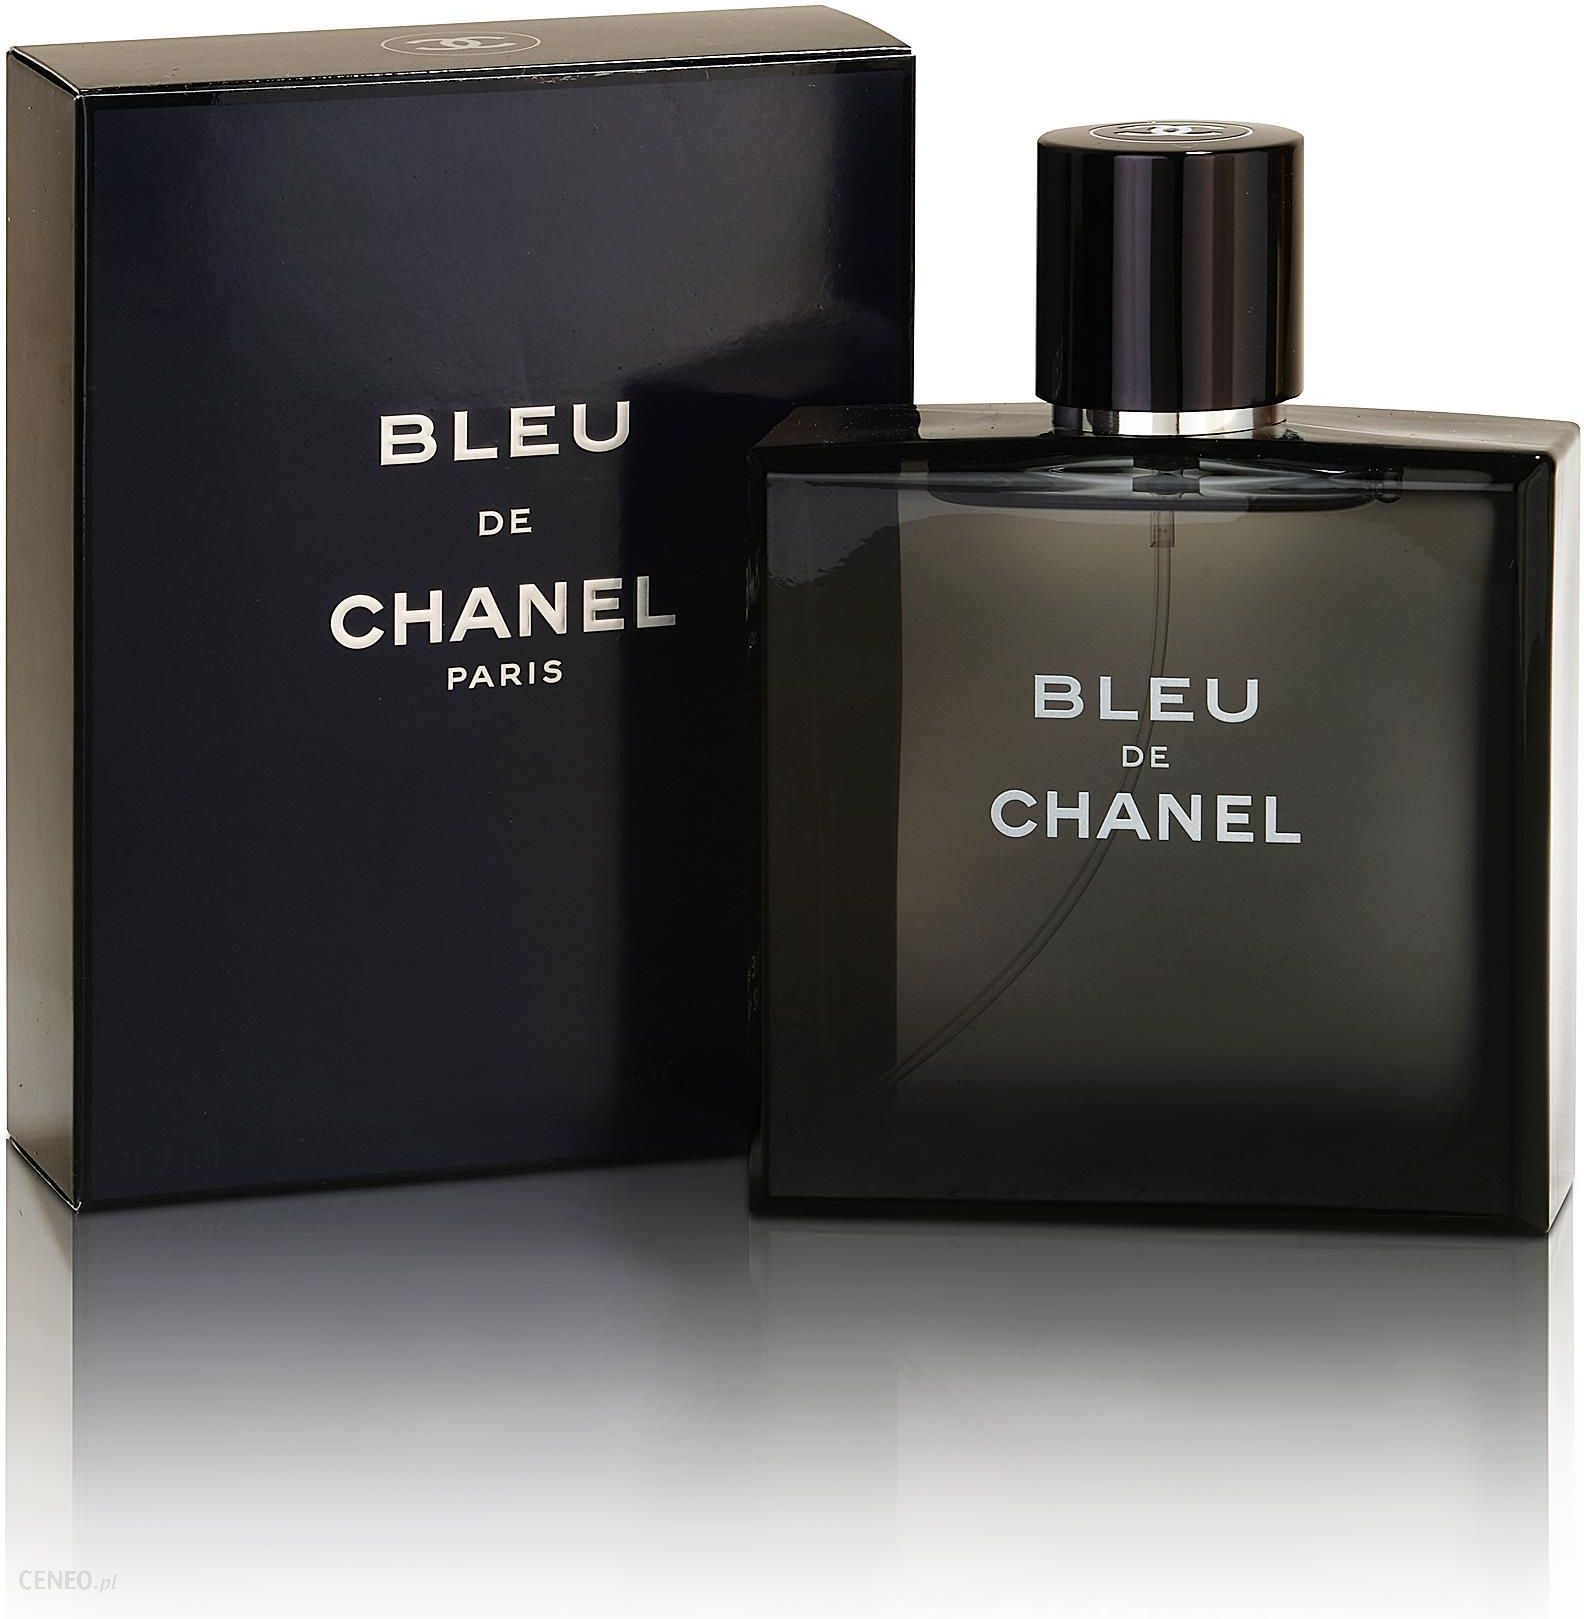 Chanel Bleu De Woda Toaletowa M 3X20 ml 1X Refillable + 2X Refill - Opinie  i ceny na